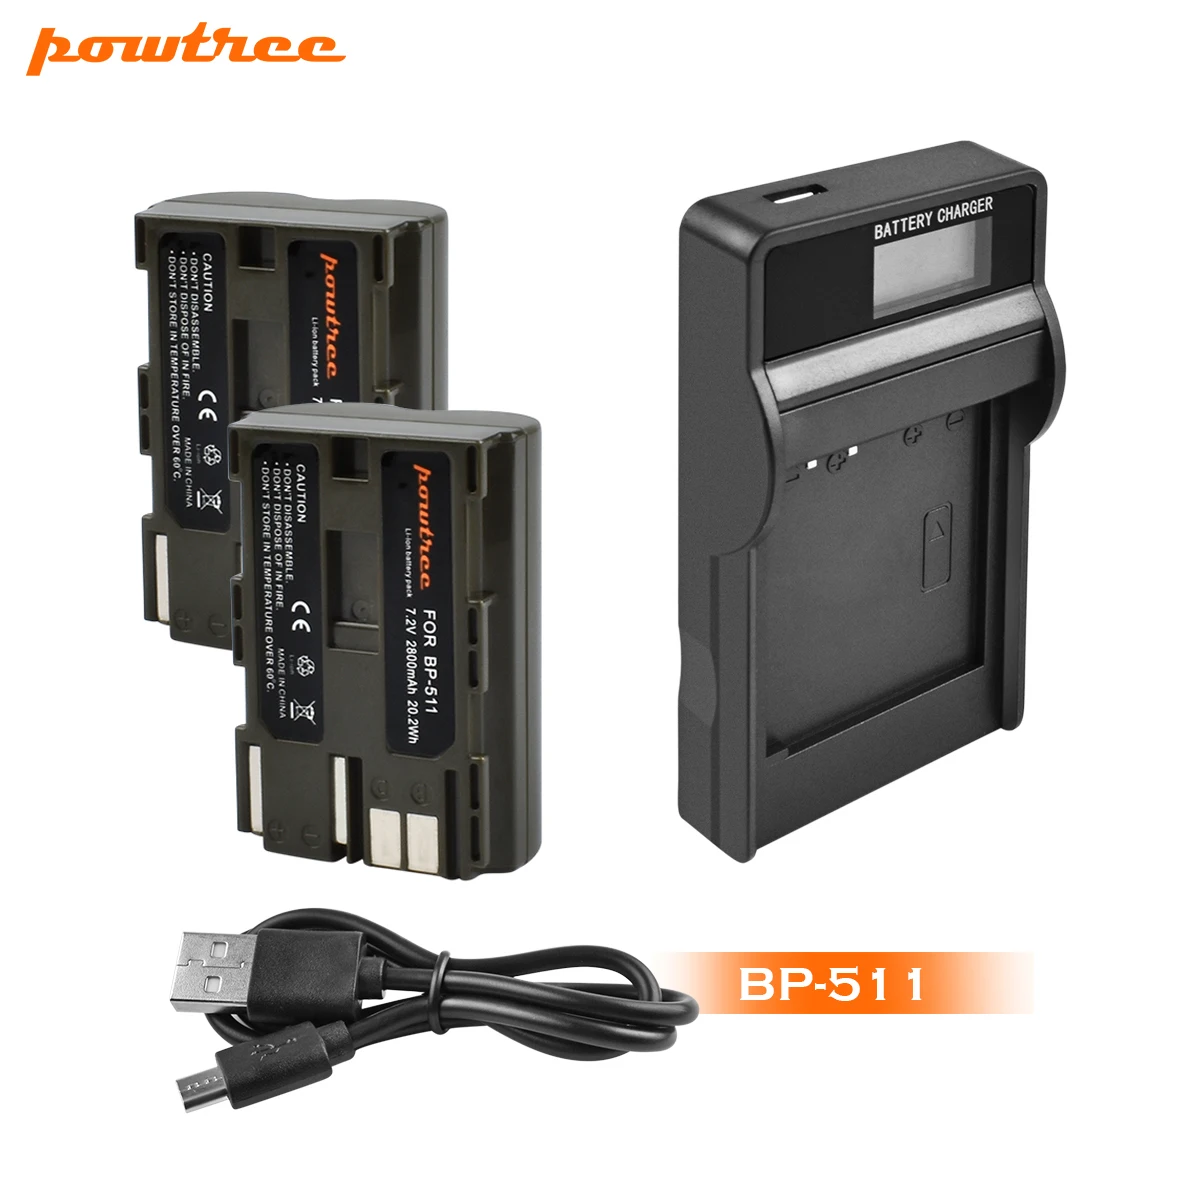 Powtree 2800 мА/ч, BP-511 BP511 BP 511 BP-511A Батарея+ ЖК-дисплей Зарядное устройство для Canon G6 G5 G3 G2 G1 EOS 300D 50D 40D 30D 20D 5D L10 - Цвет: 2X Battery Charger